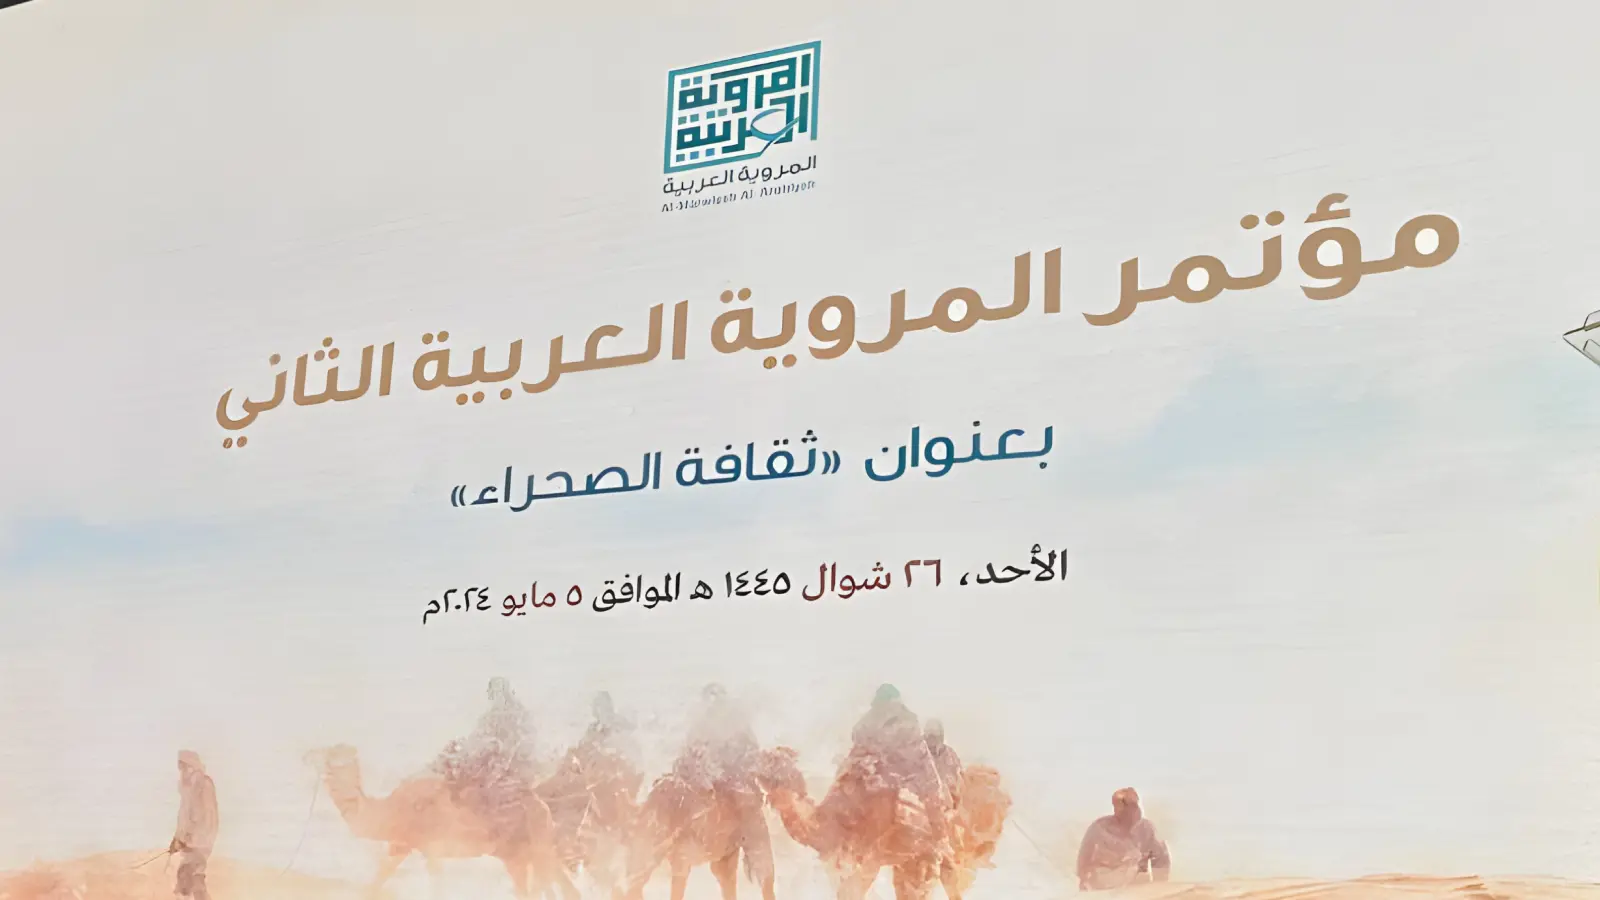 مؤتمر "المروية العربية" في الرياض يناقش "ثقافة الصحراء"